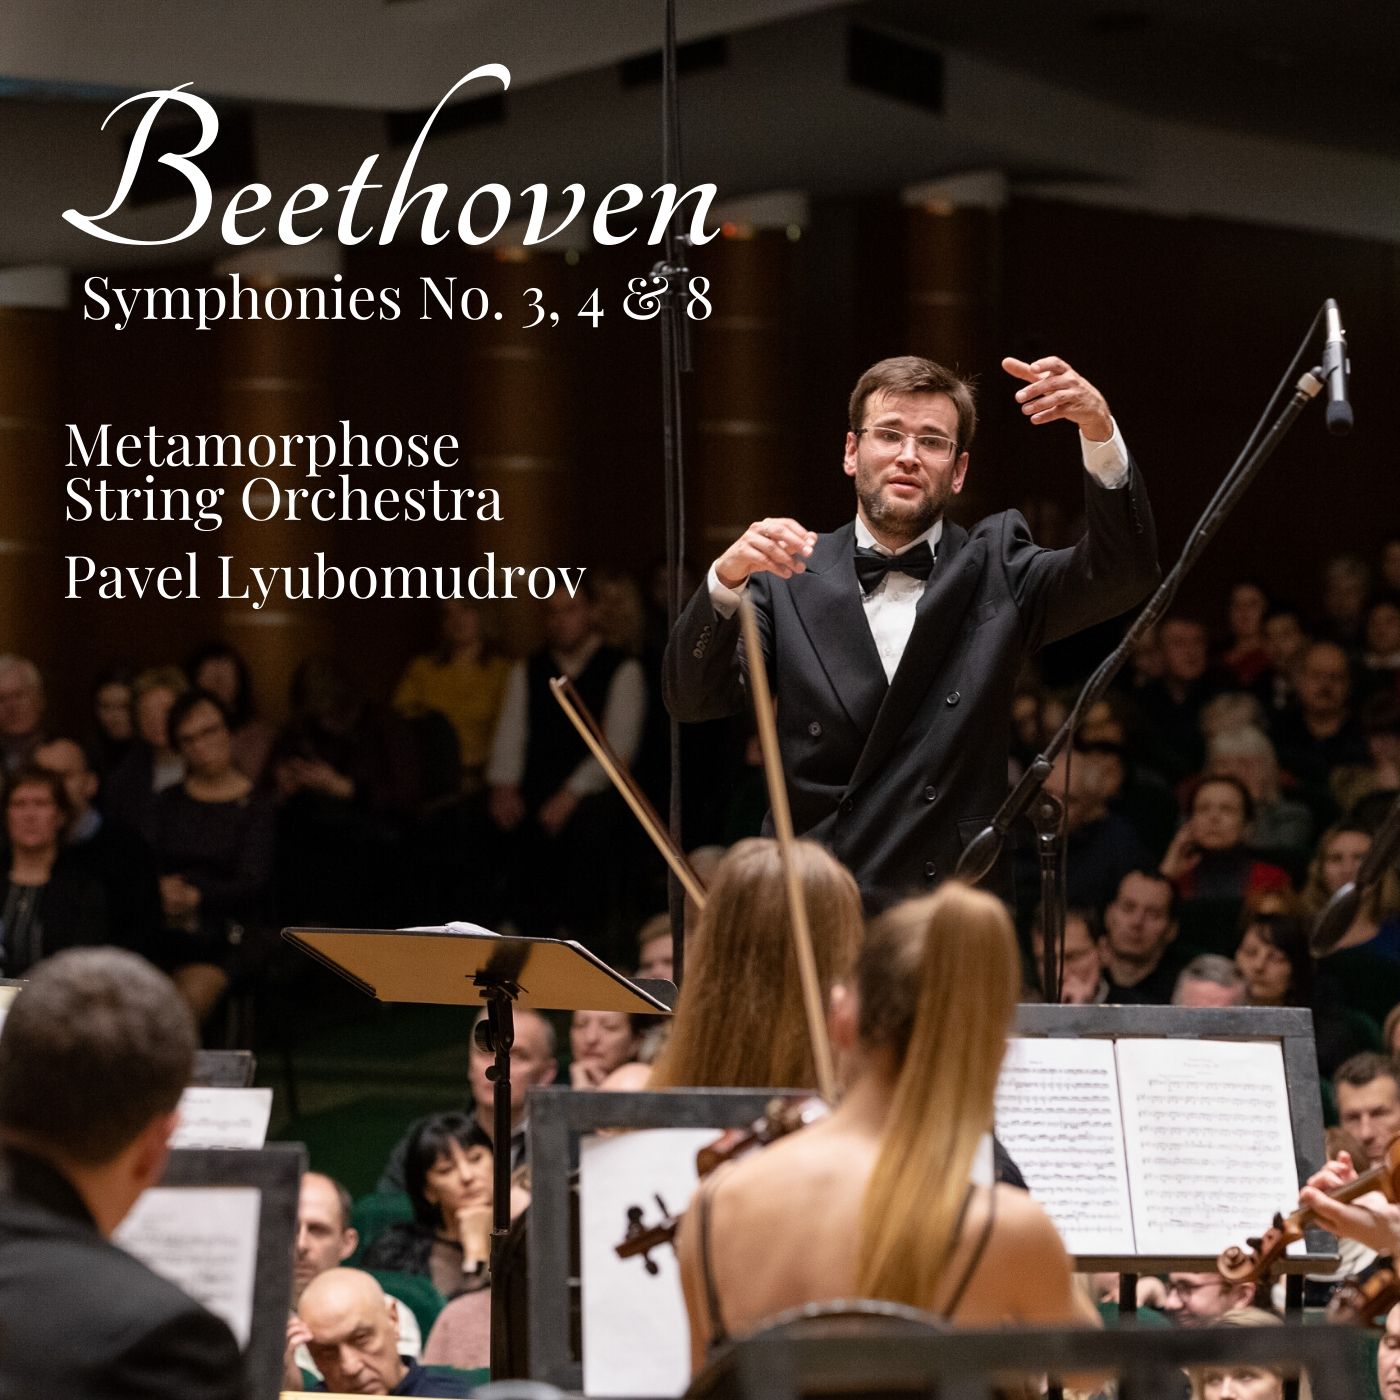 Beethoven: Symphonies No. 3, 4 & 8